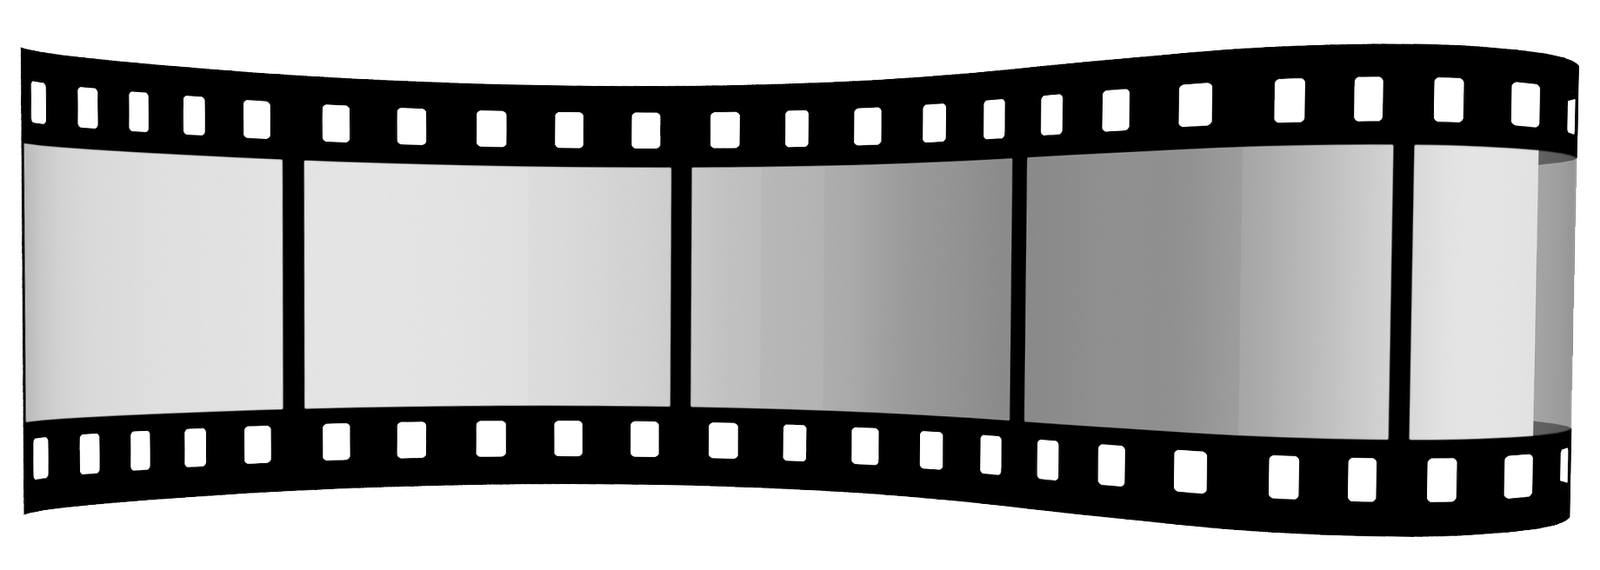 Кинолента рисунок на прозрачном фоне